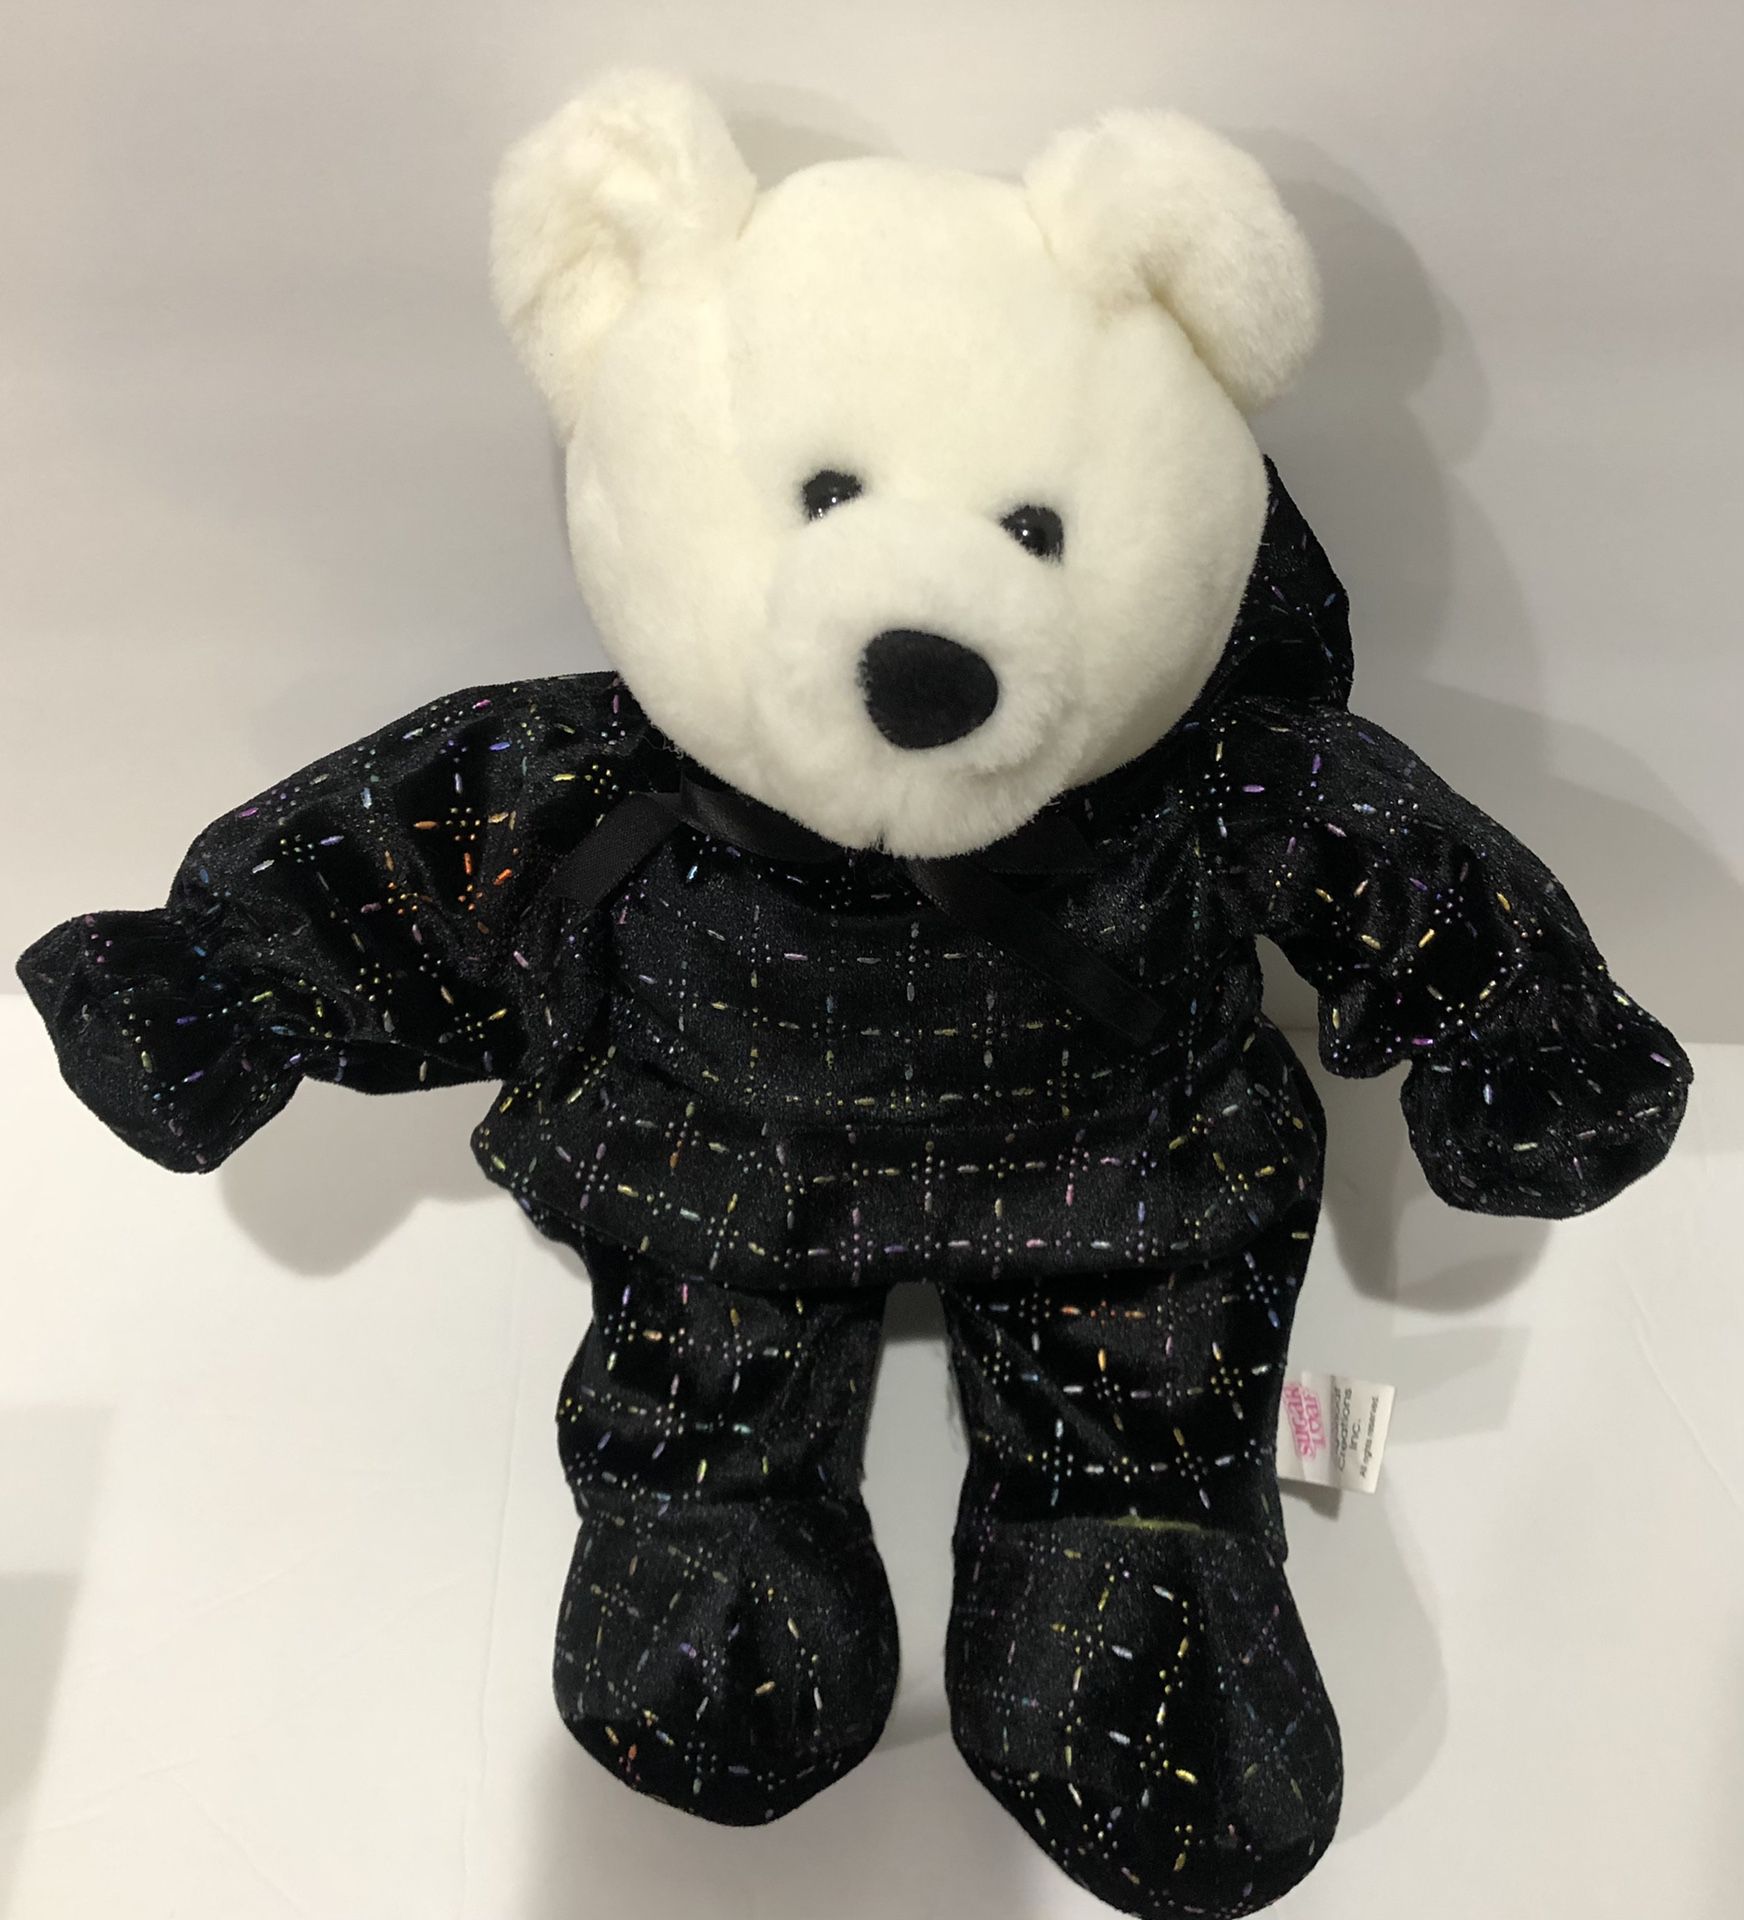 New Sugar Loaf White Teddy Bear Plush 15”